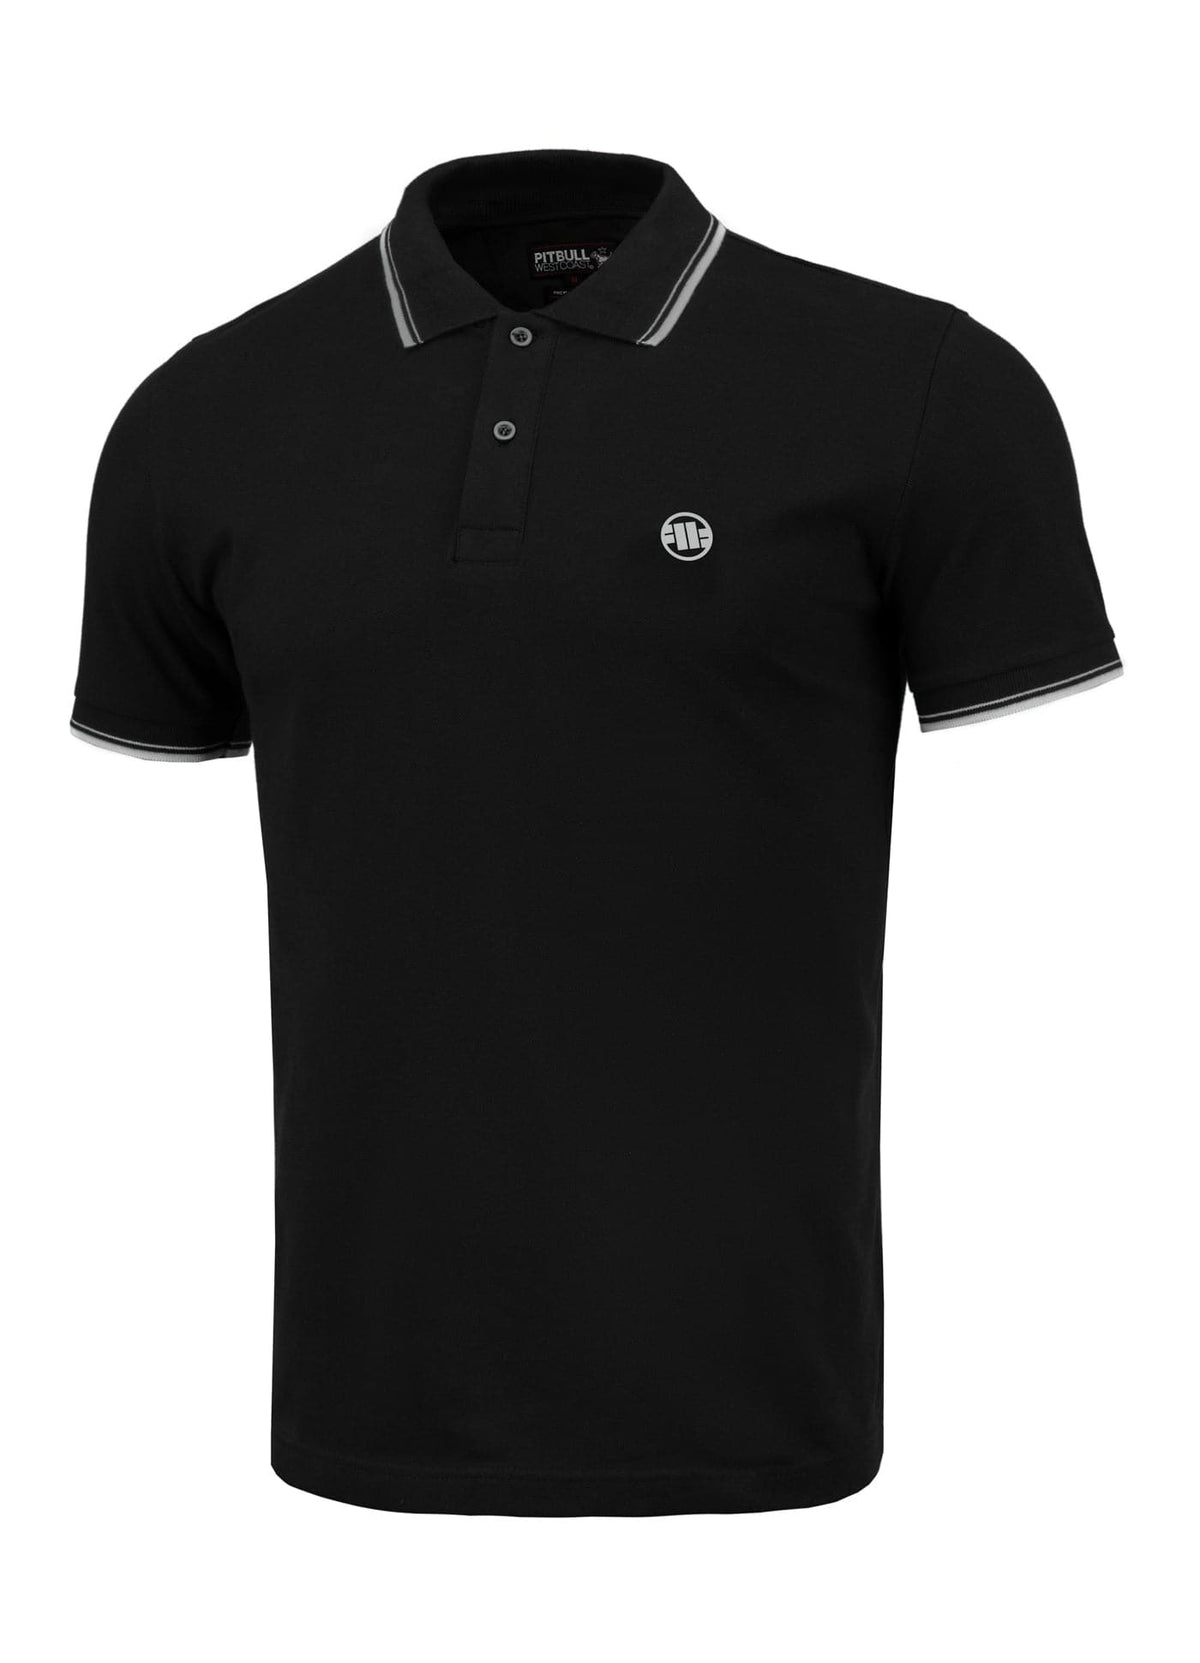 PIQUE STRIPES REGULAR Black Polo T-shirt